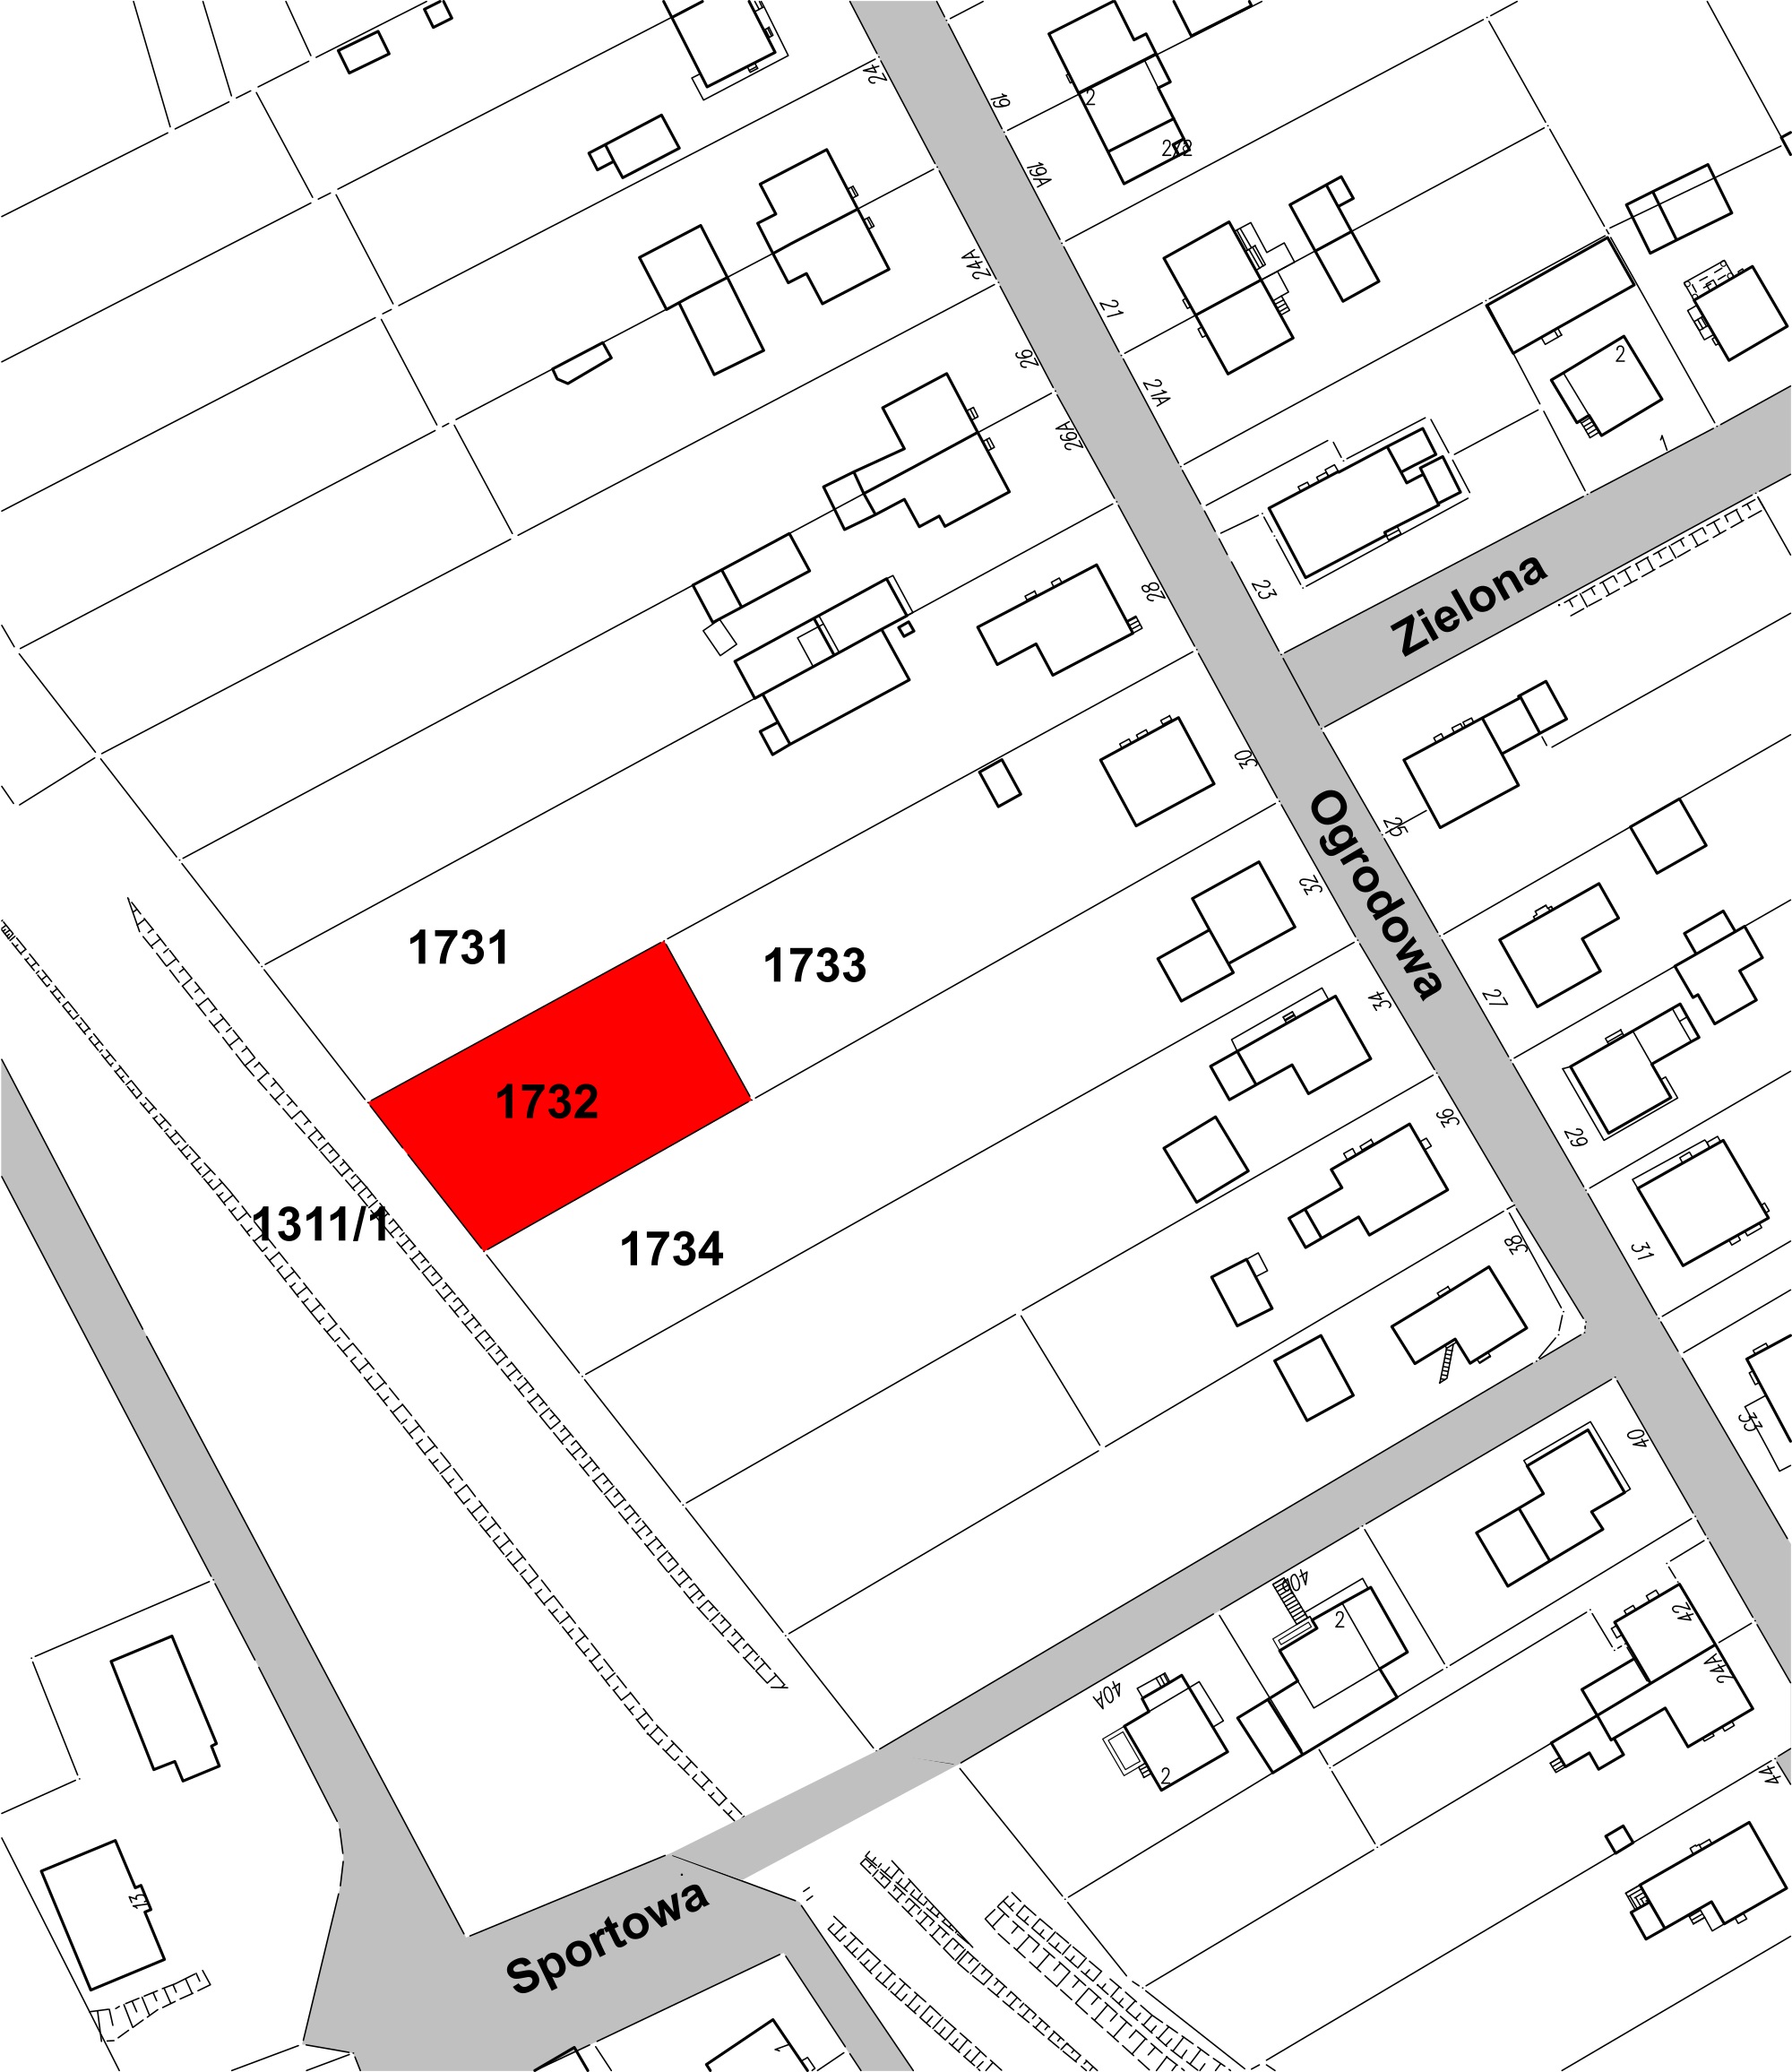 Ogłoszenie o kolejnym przetargu ustnym ograniczonym na sprzedaż nieruchomości gruntowej niezabudowanej, położonej w Ełku przy ul. Ogrodowej, oznaczonej nr 1732 o obszarze 0,0837 ha